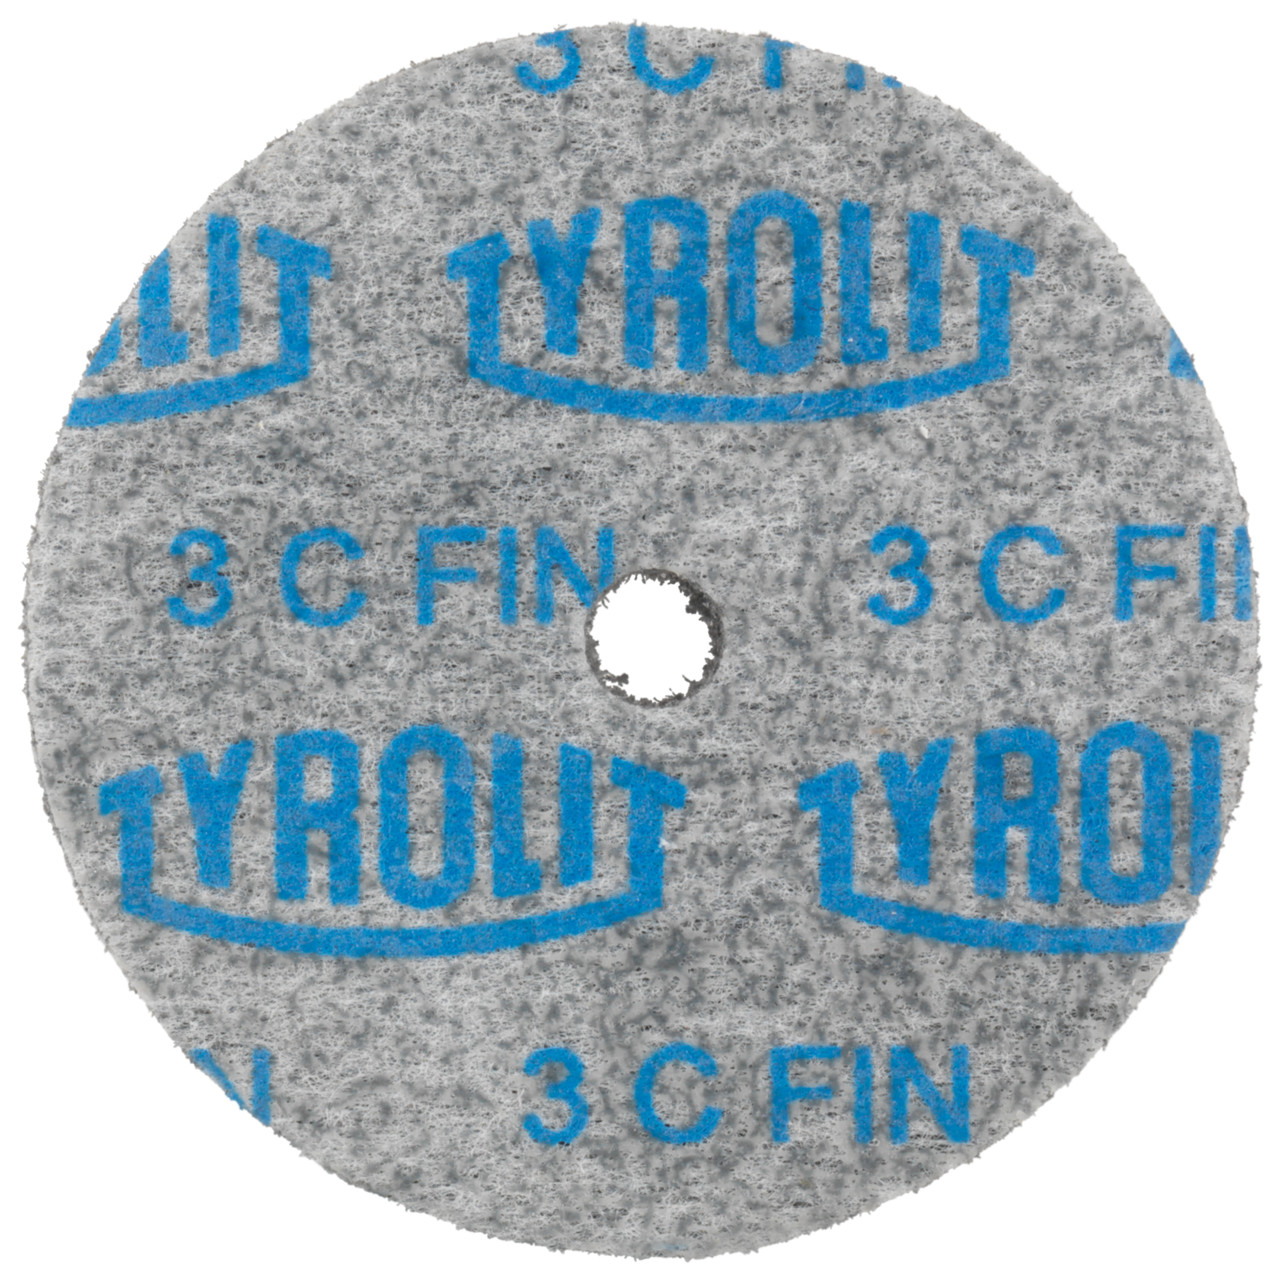 Tyrolit Discos compactos prensados DxDxH 25x25x4,8 Inserción universal, 3 C FEIN, forma: 1, Art. 34201995